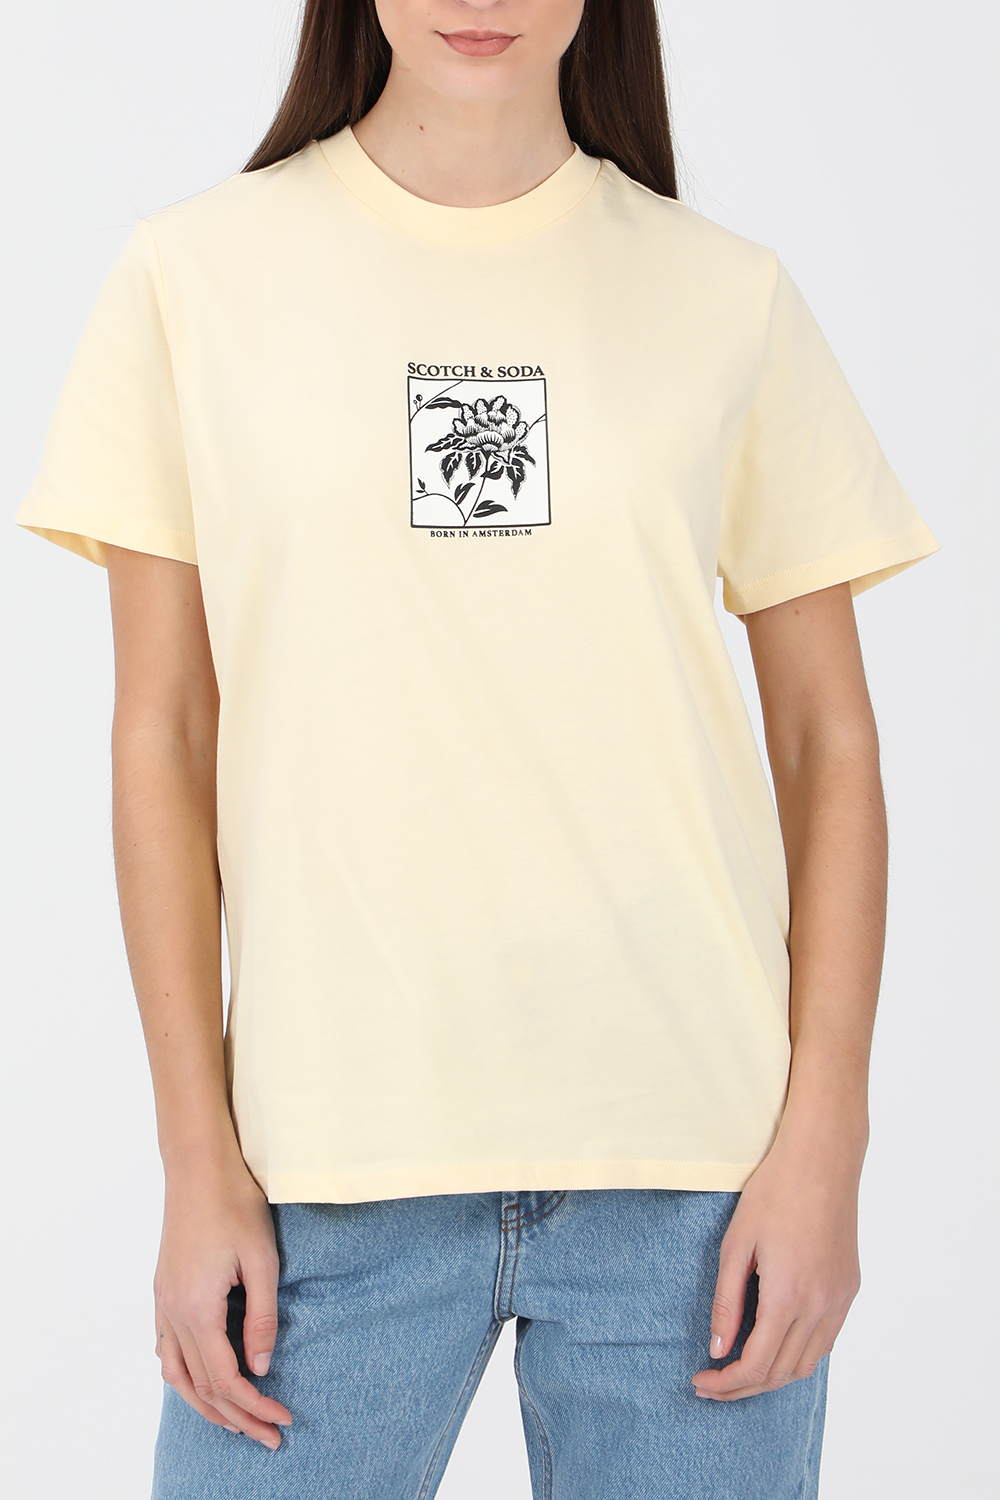 SCOTCH & SODA – Γυναικεια κοντομανικη μπλουζα SCOTCH & SODA κιτρινη